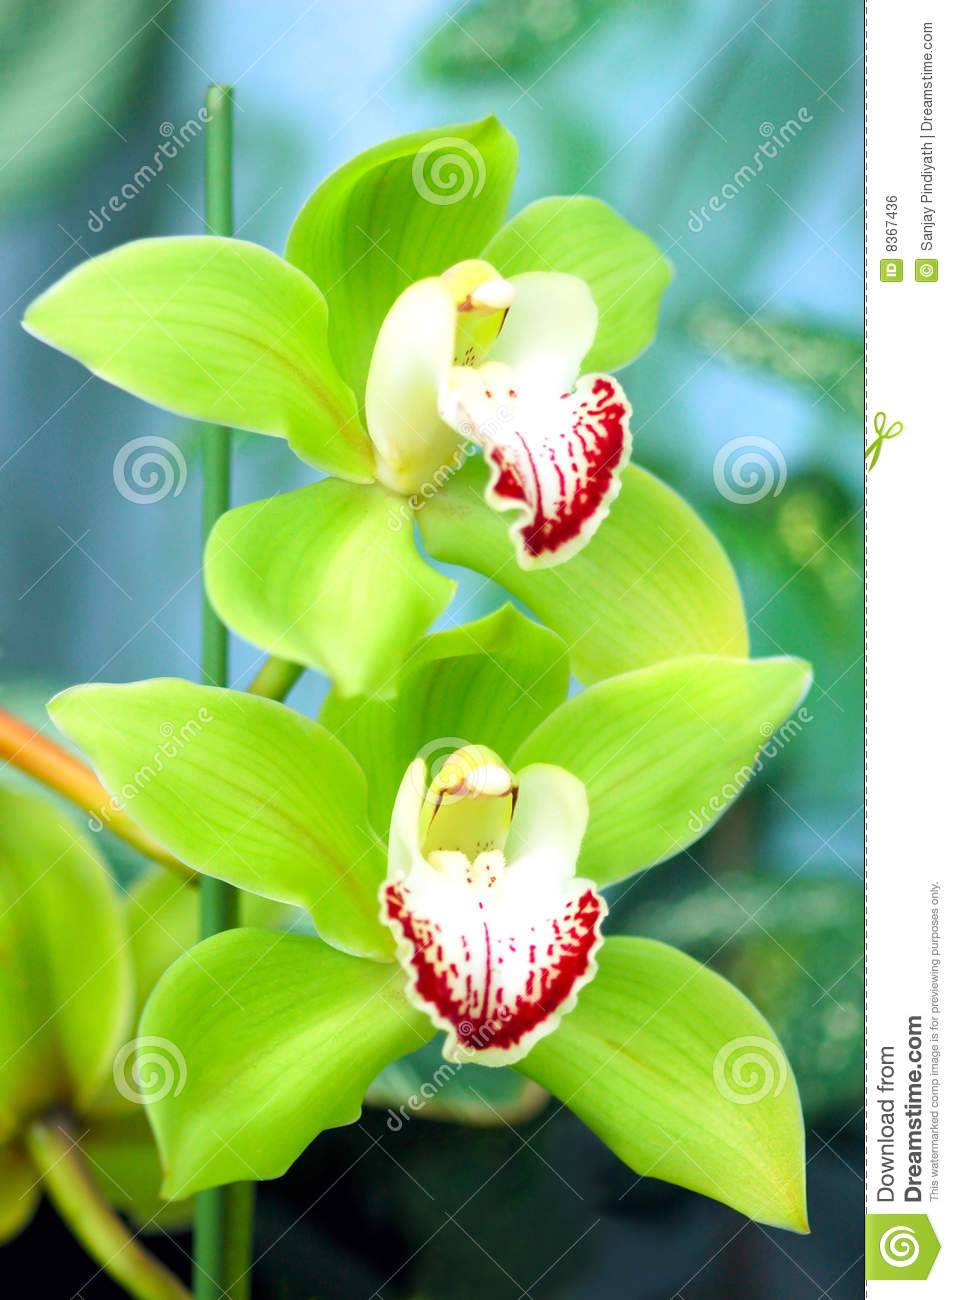 Расцветки орхидеи selo.guru — интернет портал о сельском хозяйстве